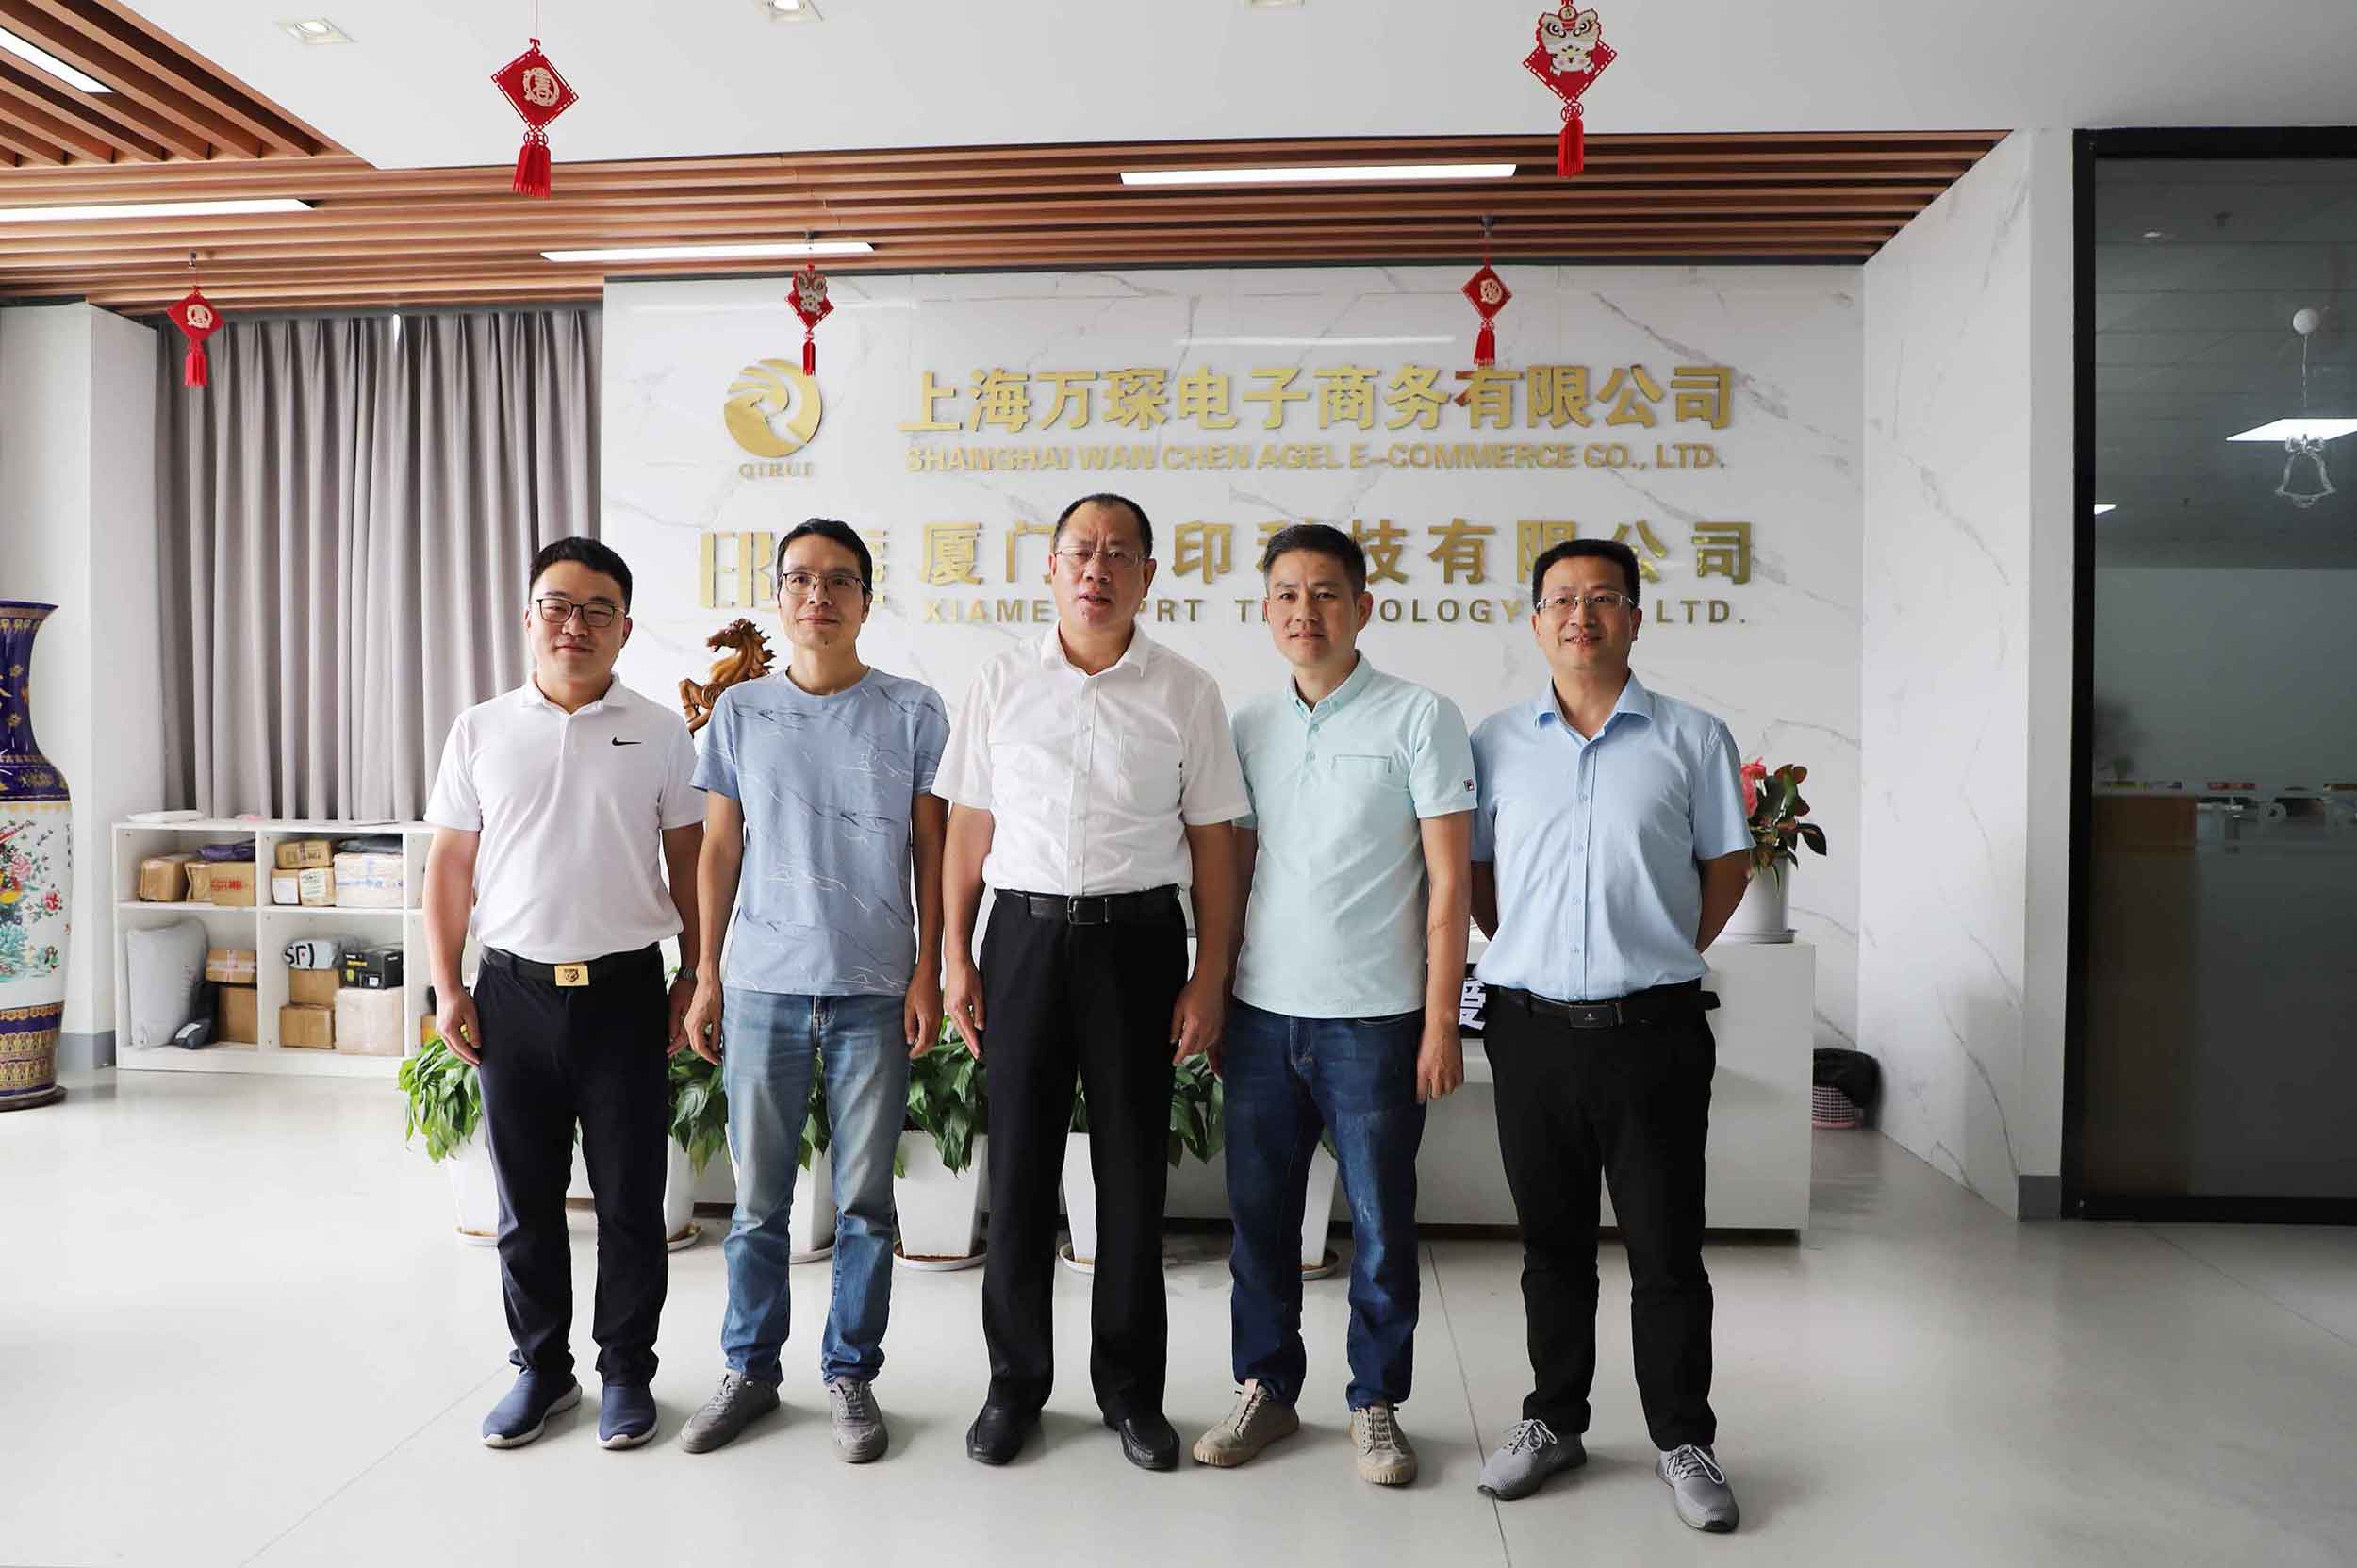 Чжан Игун, заместитель секретаря Сямэньского муниципального партийного комитета, представил исследование технологии IPRT.